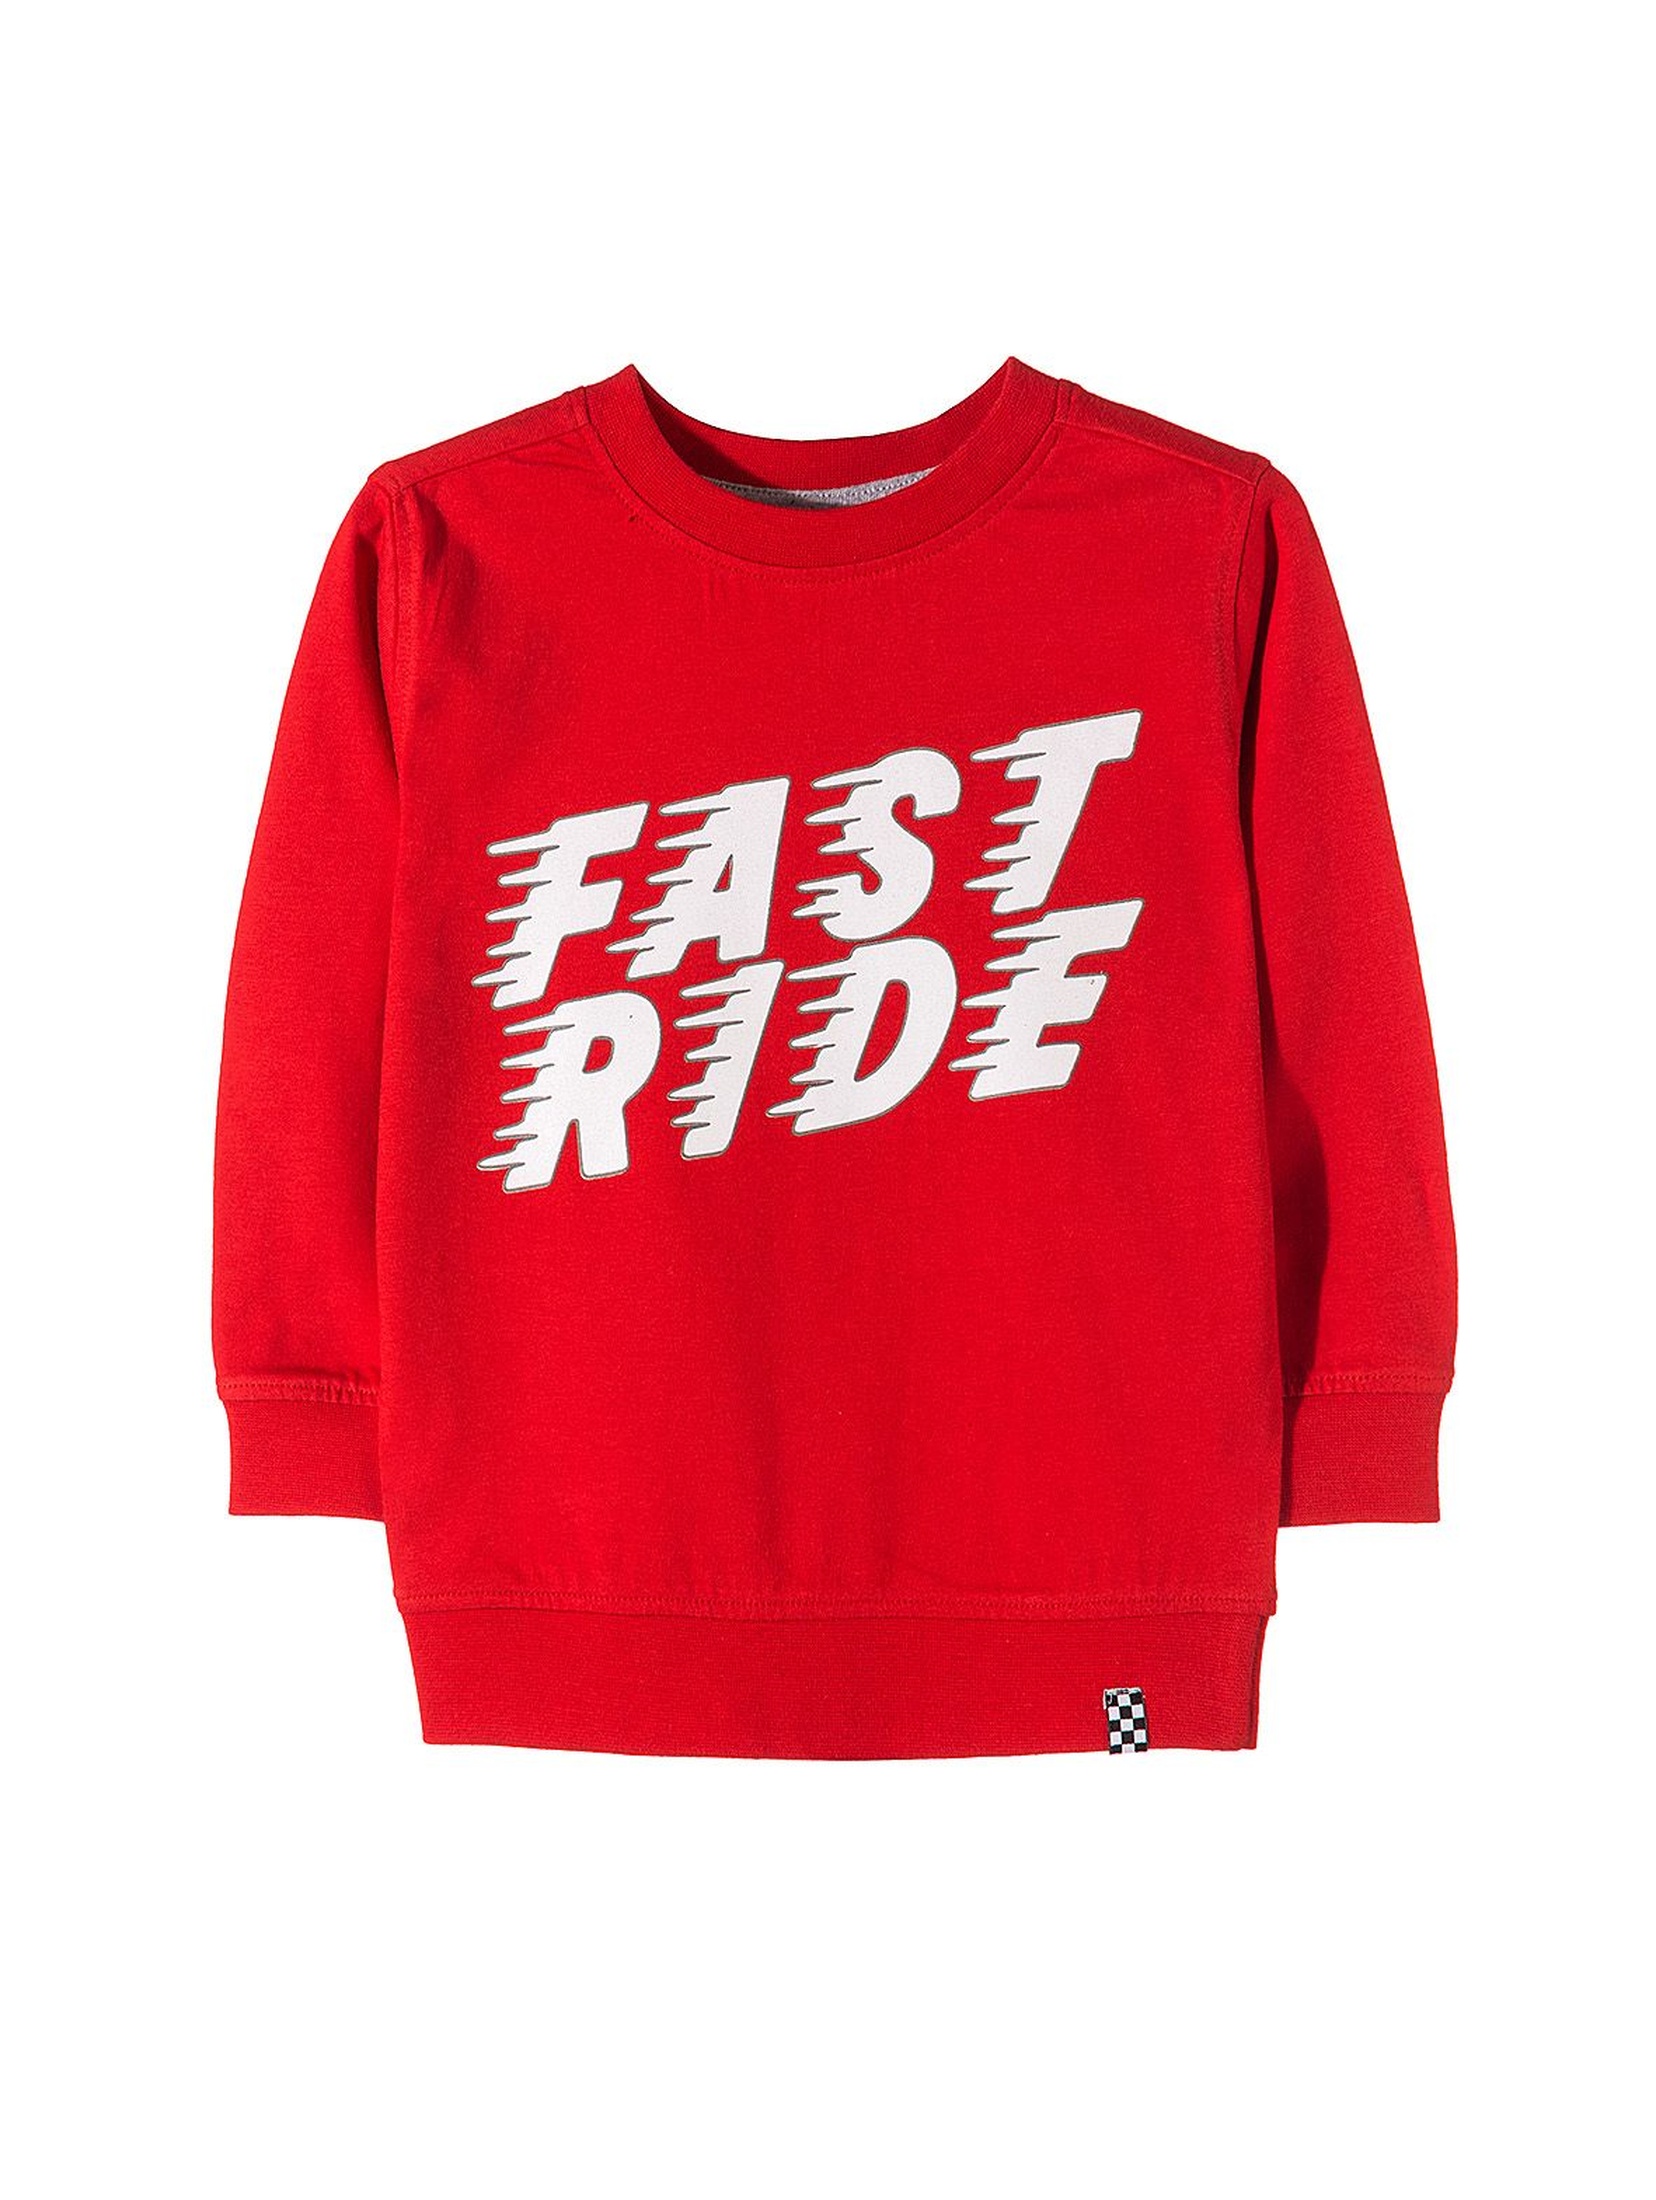 Bluzka czerwona dla chłopca- fast ride